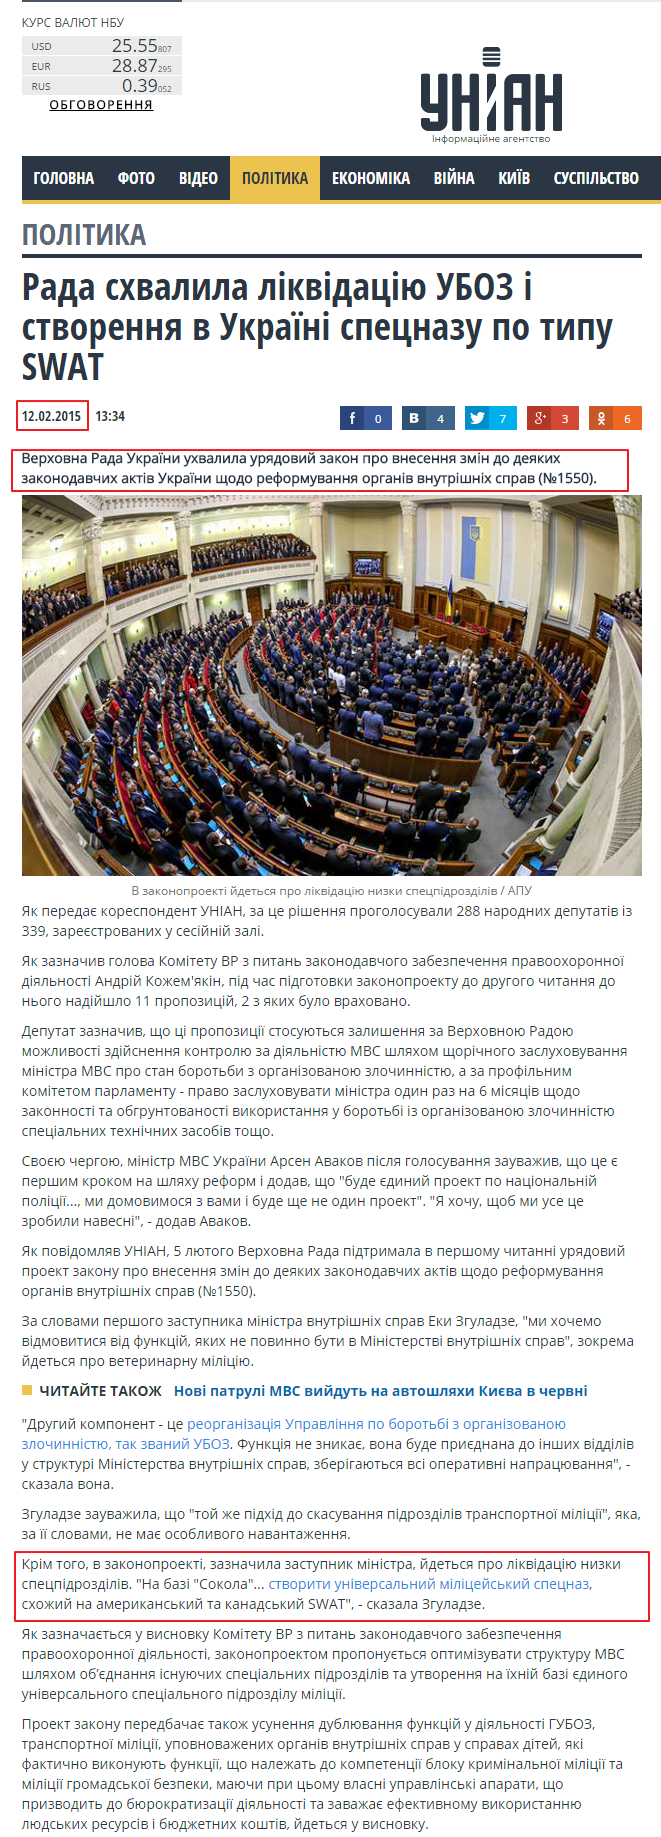 http://www.unian.ua/politics/1043351-rada-shvalila-likvidatsiyu-uboz-i-stvorennya-v-ukrajini-spetsnazu-po-tipu-swat.html